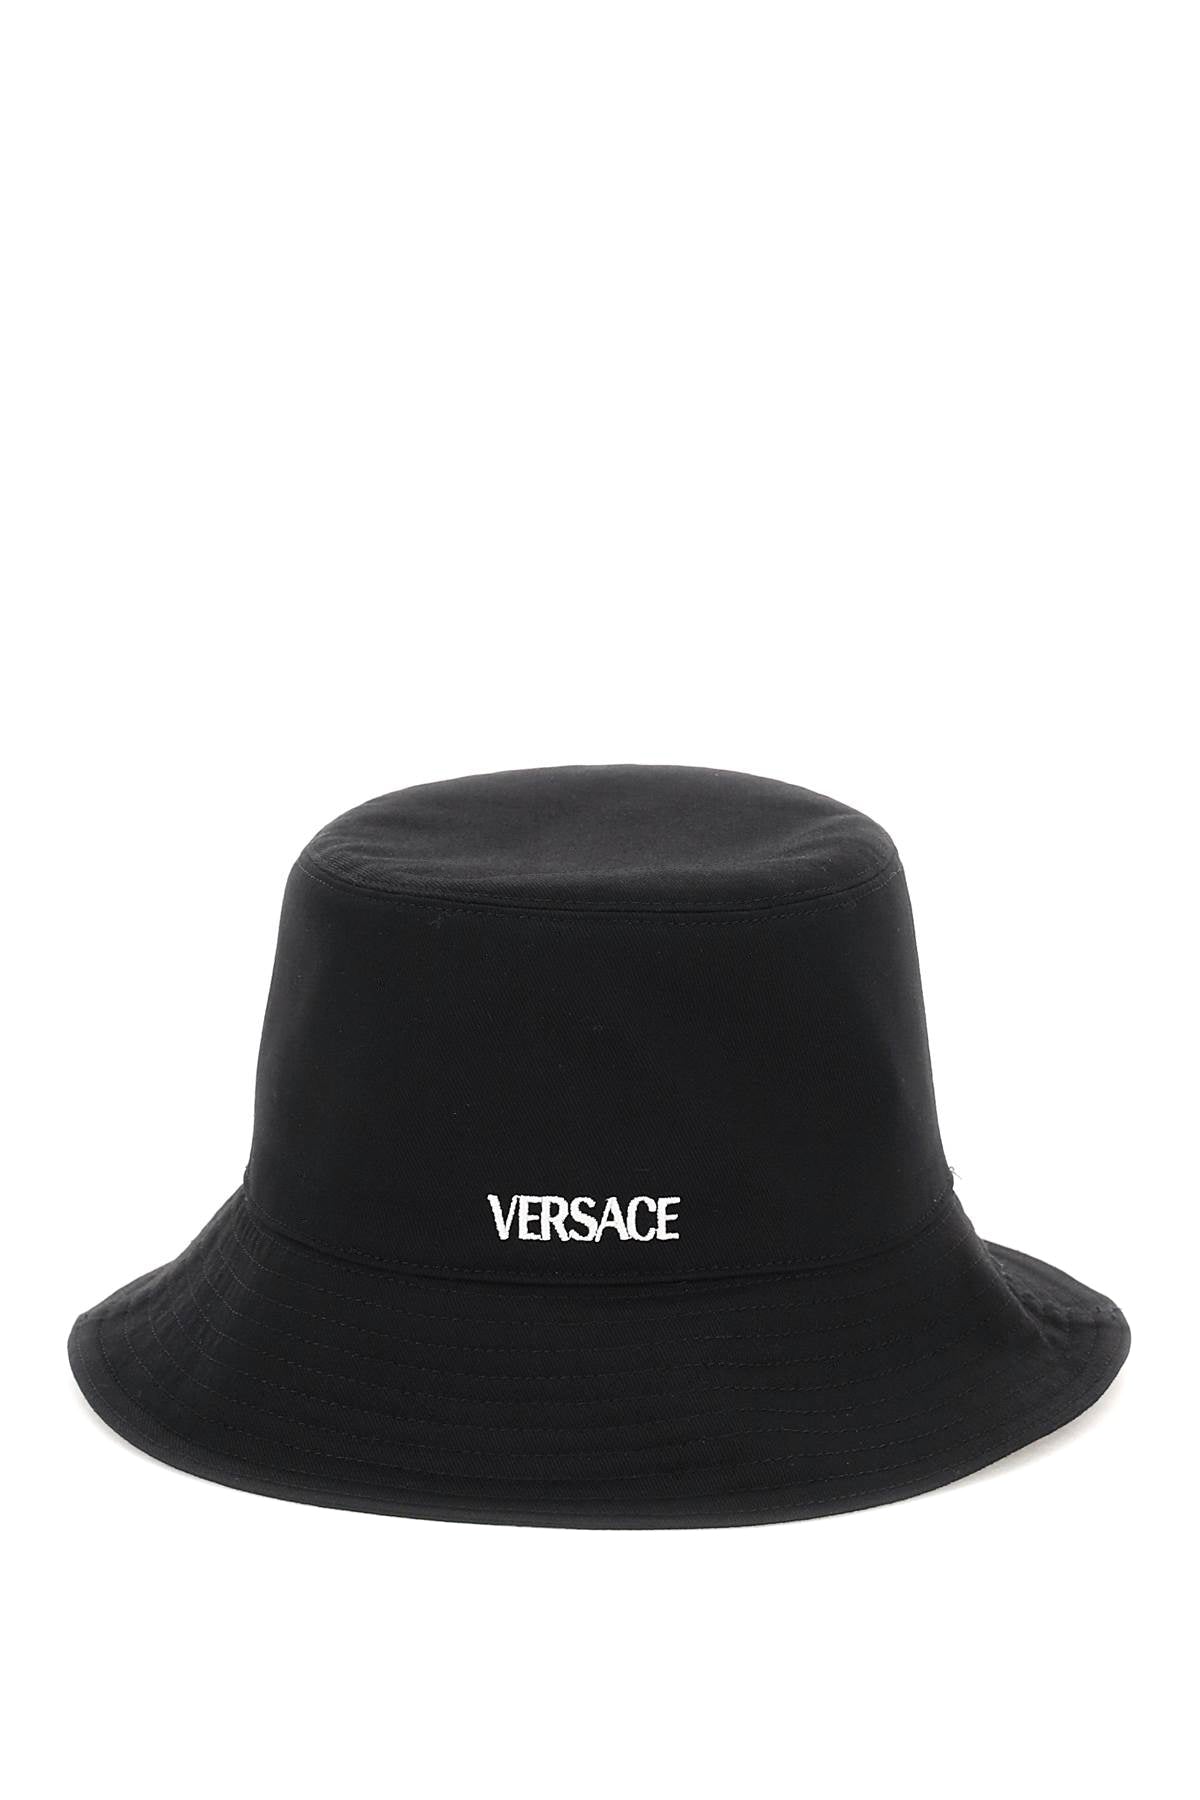 Versace Versace embroidered bucket hat